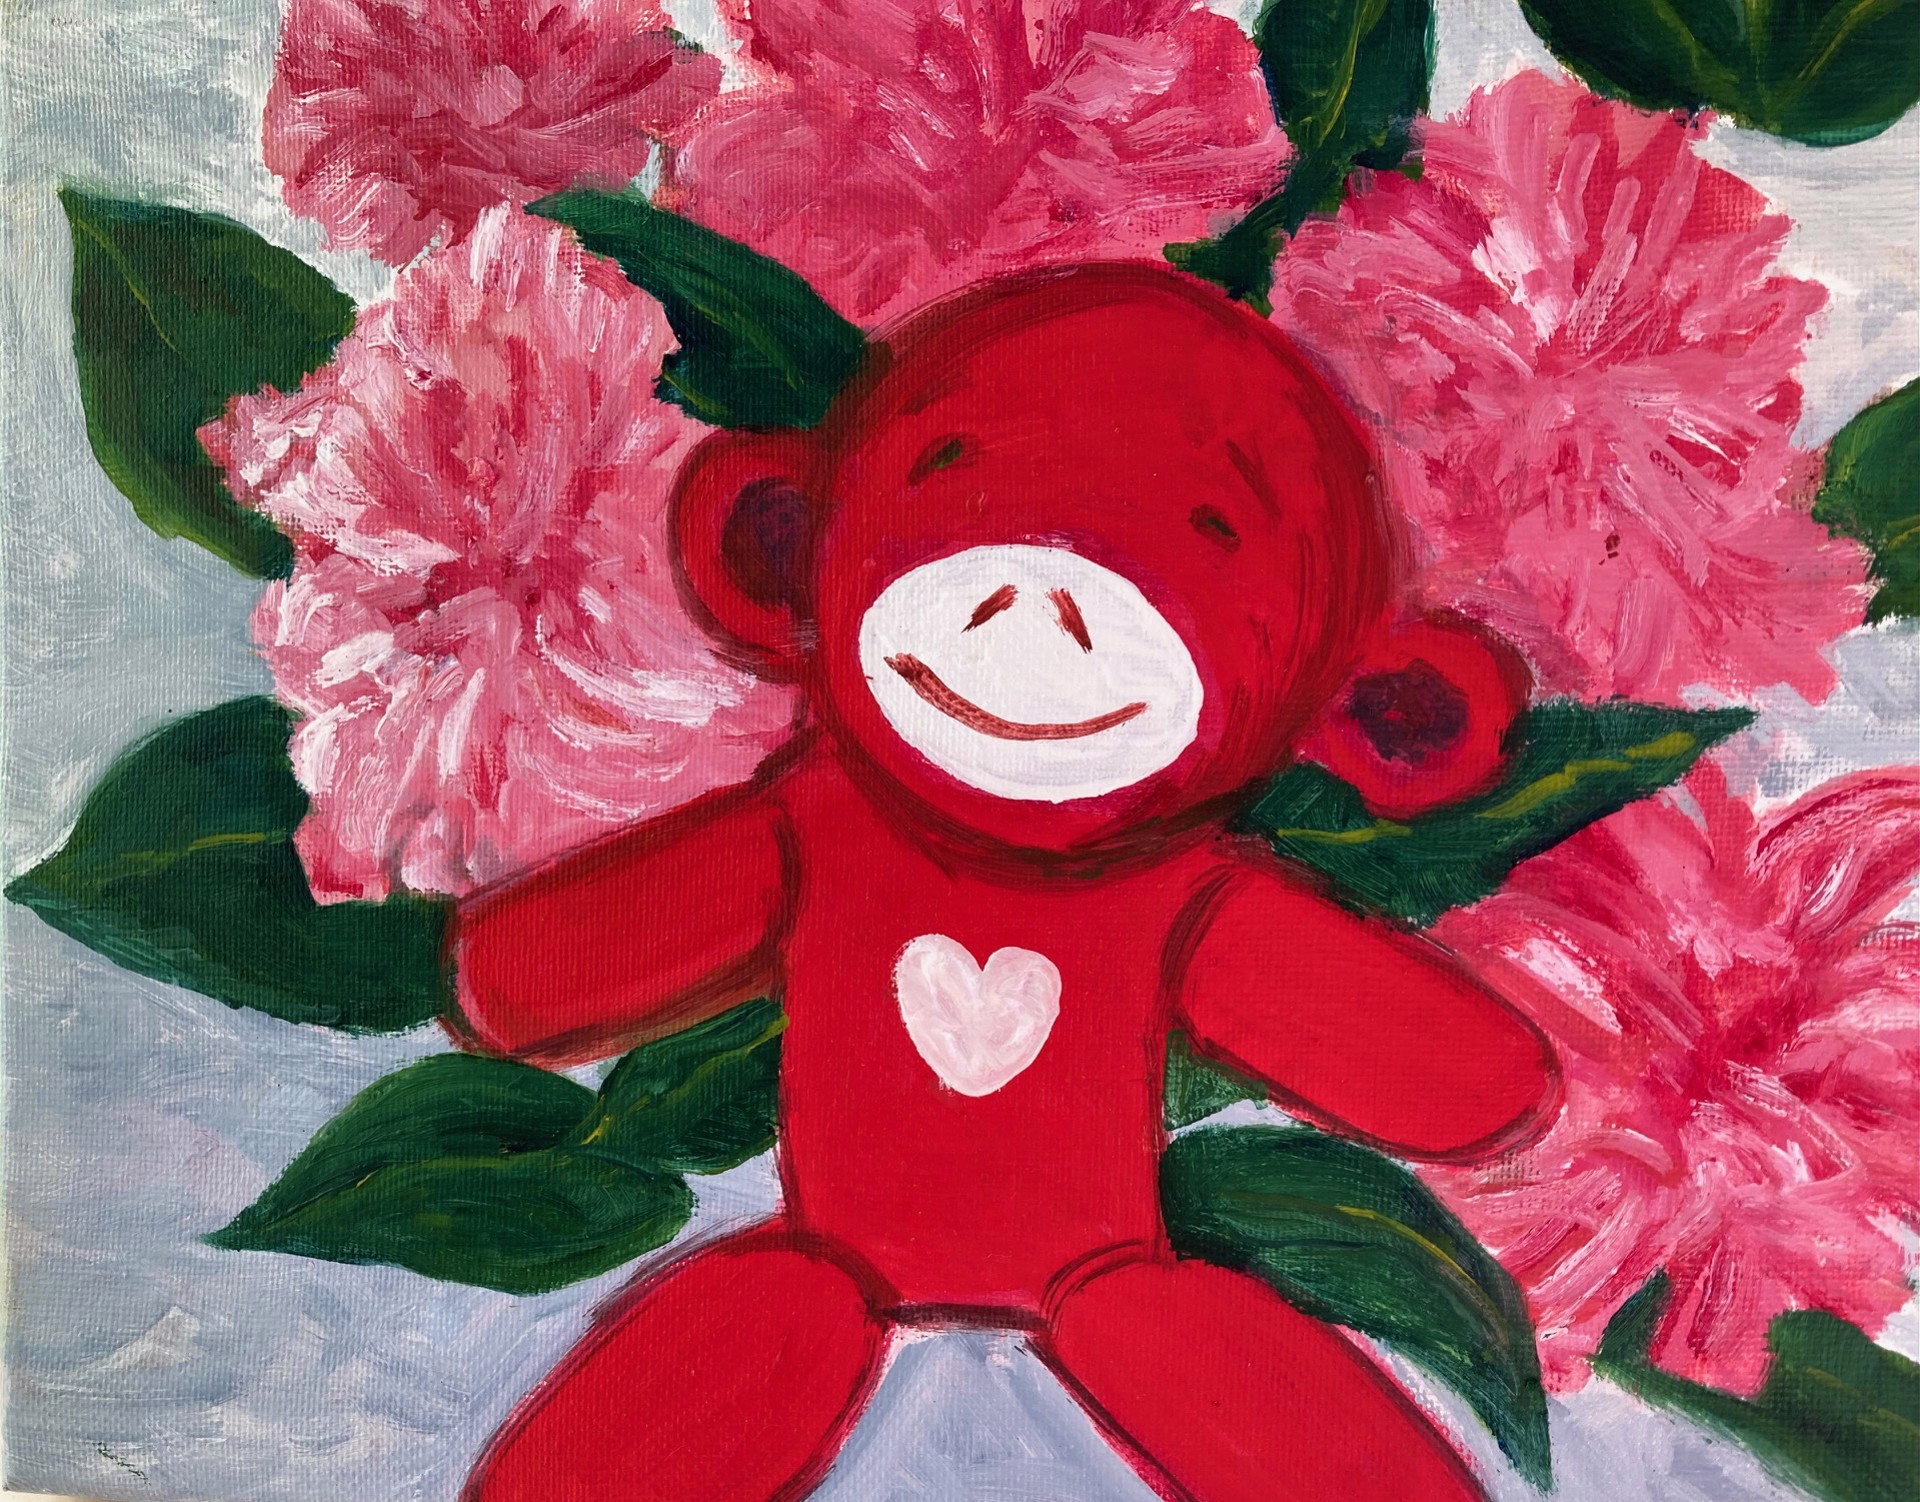 Happy Little Monkey by Betty McGlamery